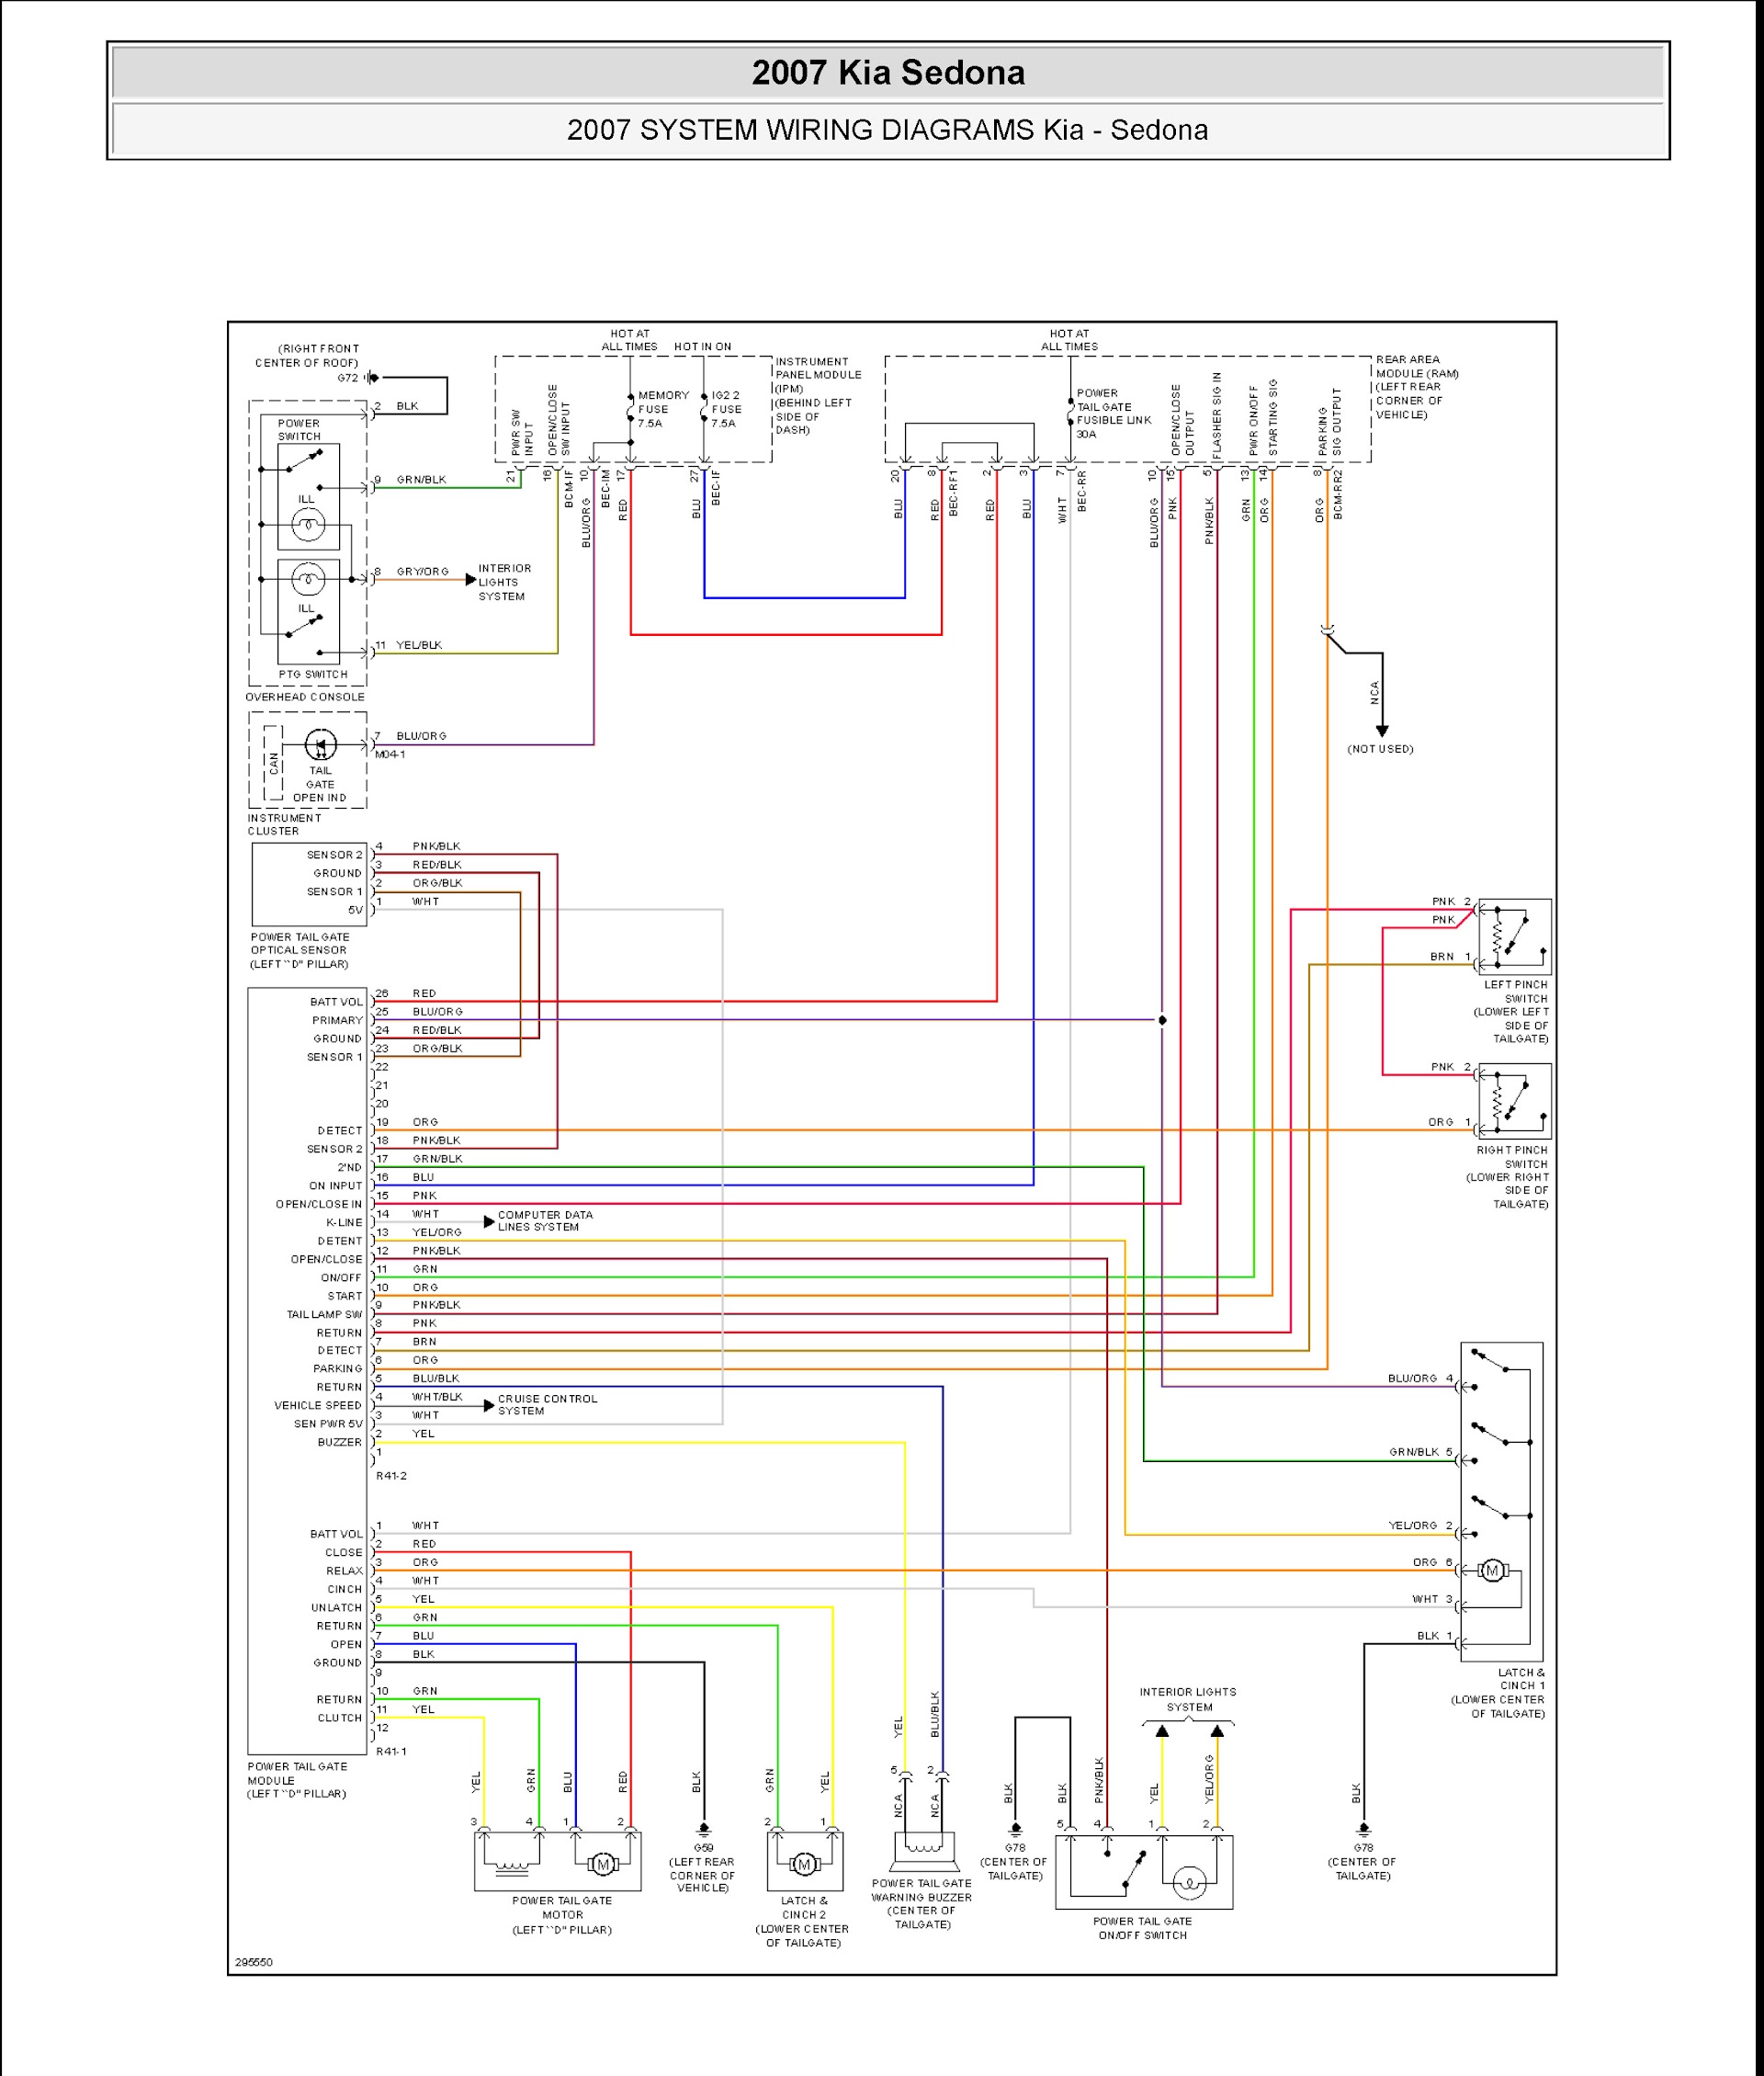 2007 Kia Sedona Repair Manual, Wiring Diagram